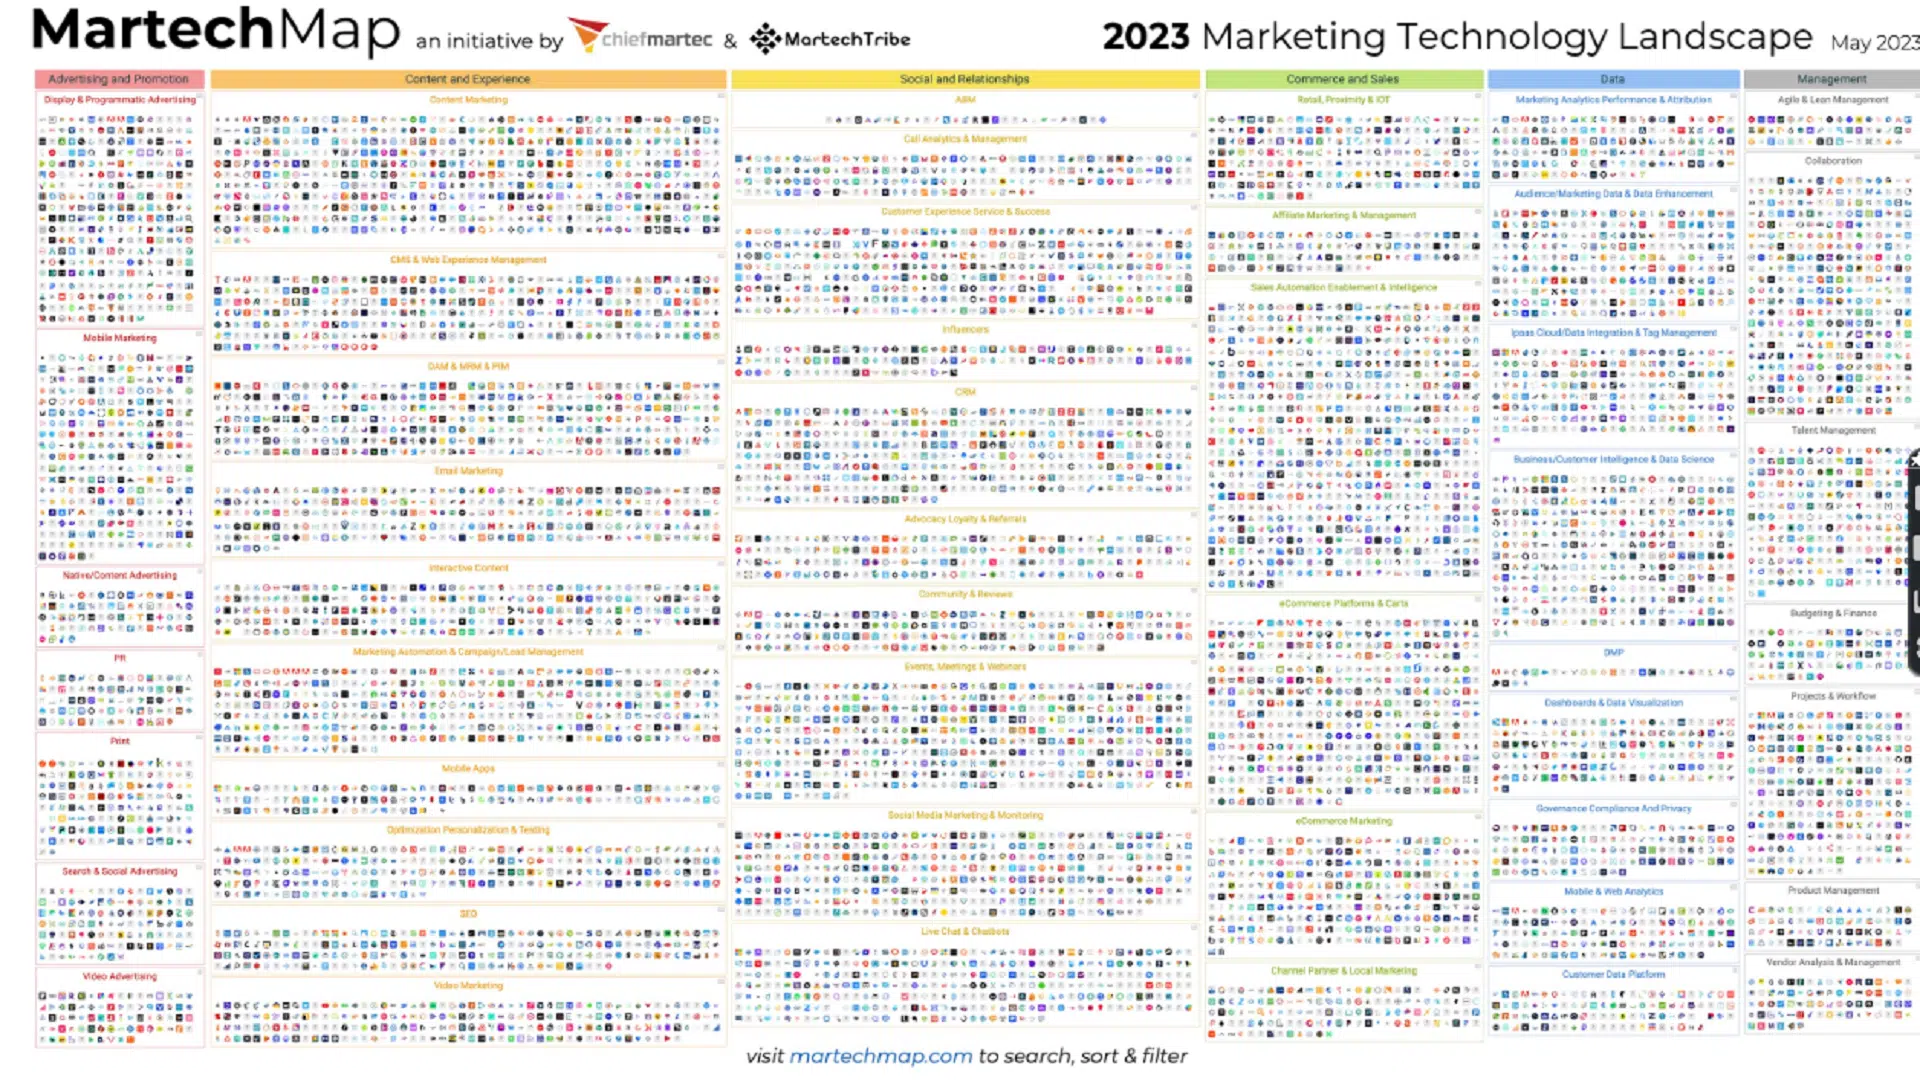 Die Marketing Technology Landscape (MartechMap) 2023 mit über 11.000 bekannten Tools in fast 50 Kategorien.